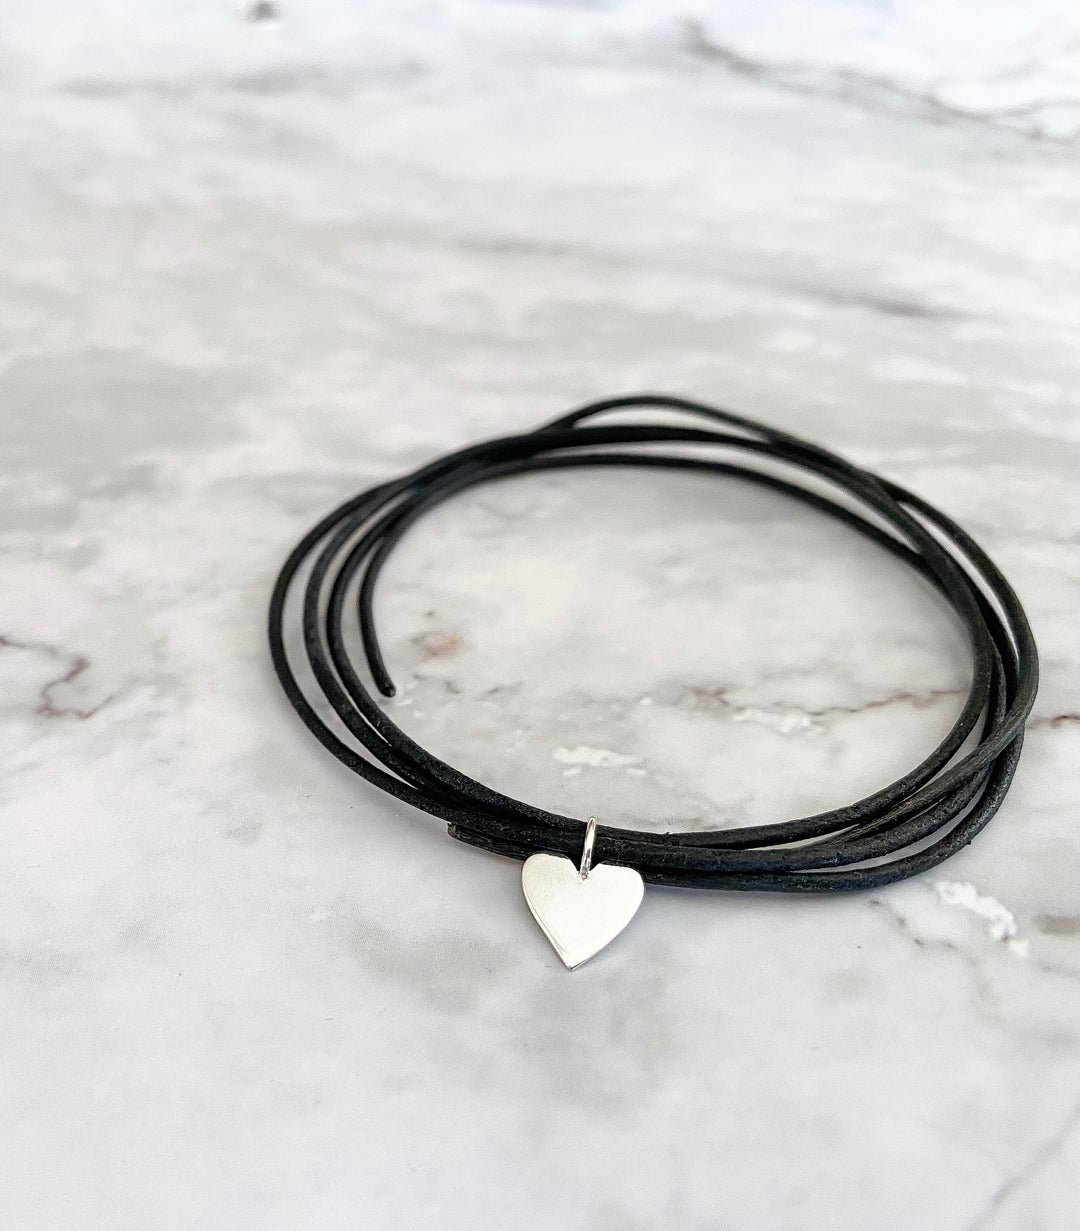 Sterling silver heart leather bracelet "Heart 2 Heart"